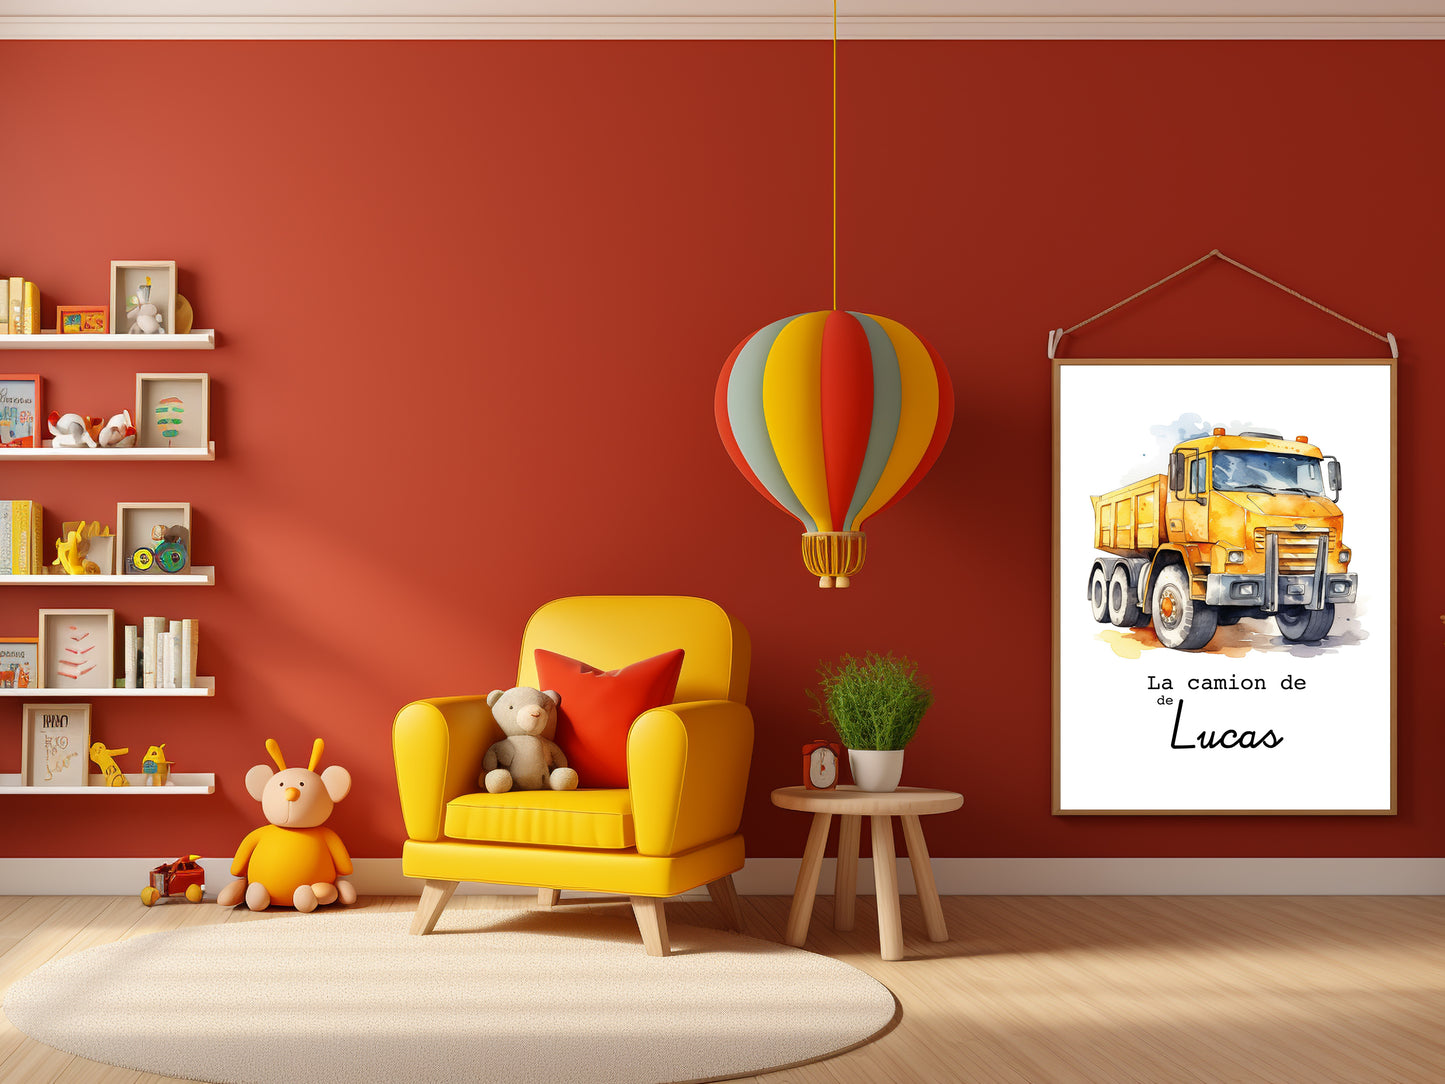 Affiche Personnalisée camion jaune de chantier - Le camion de {Prénom de l'Enfant} pour les petits fans de chantier et travaux